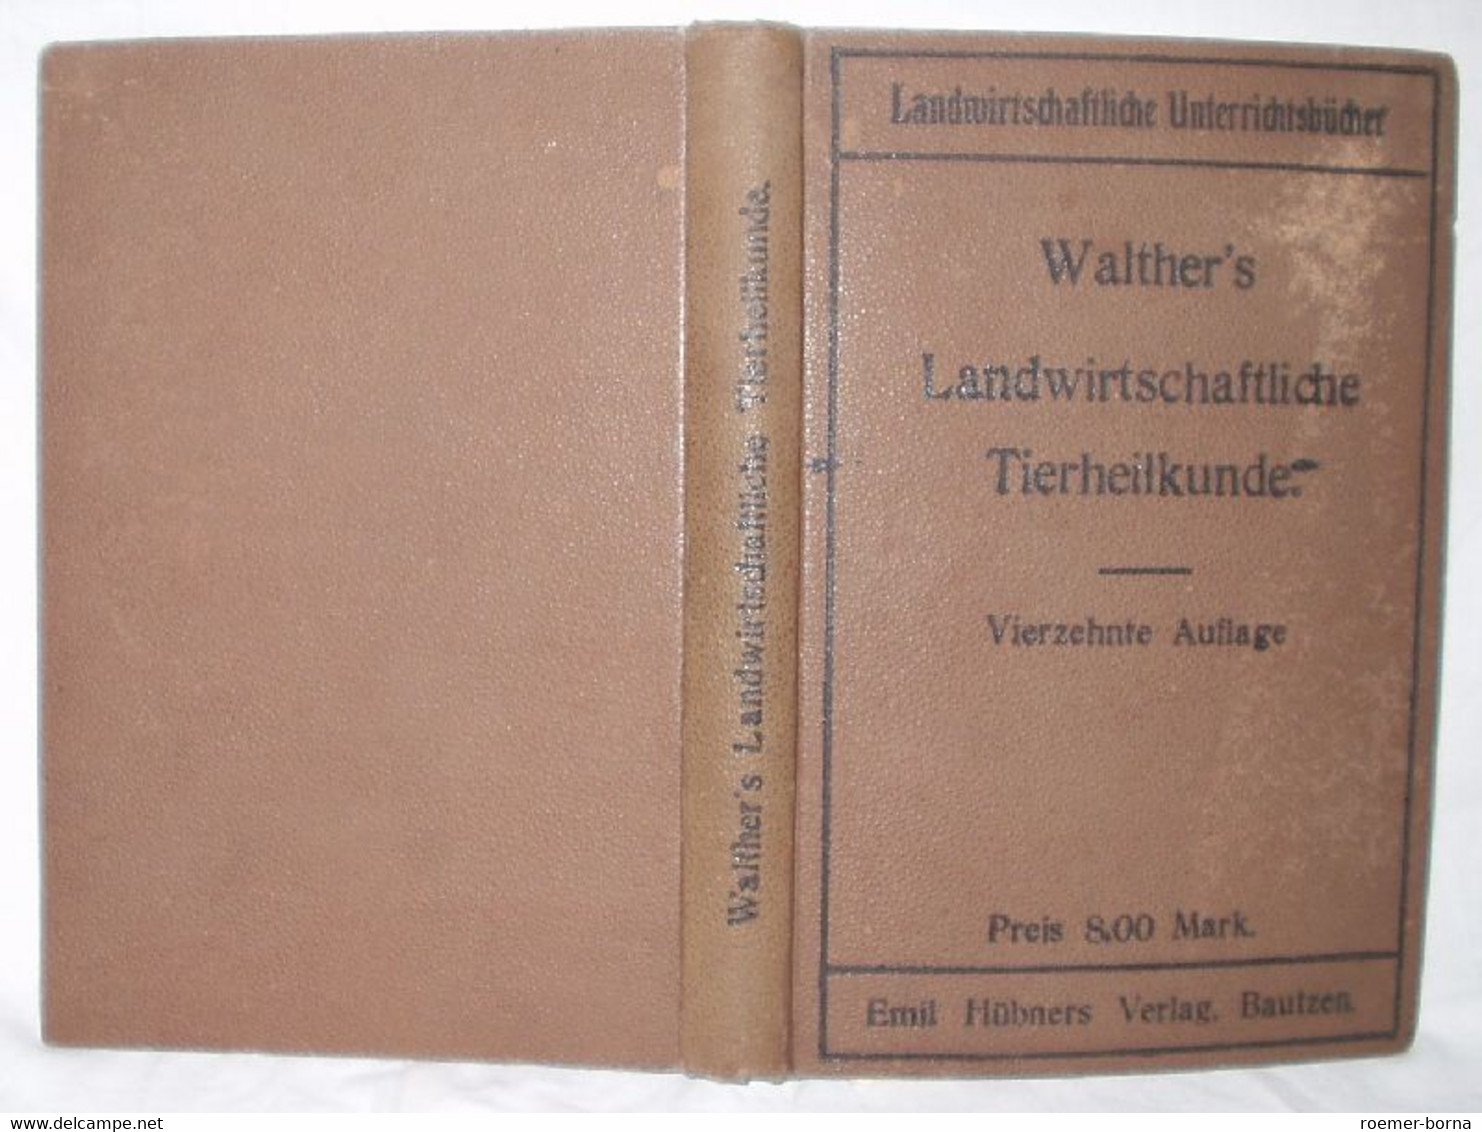 Walthers Landwirtschaftliche Tierheilkunde - Animales